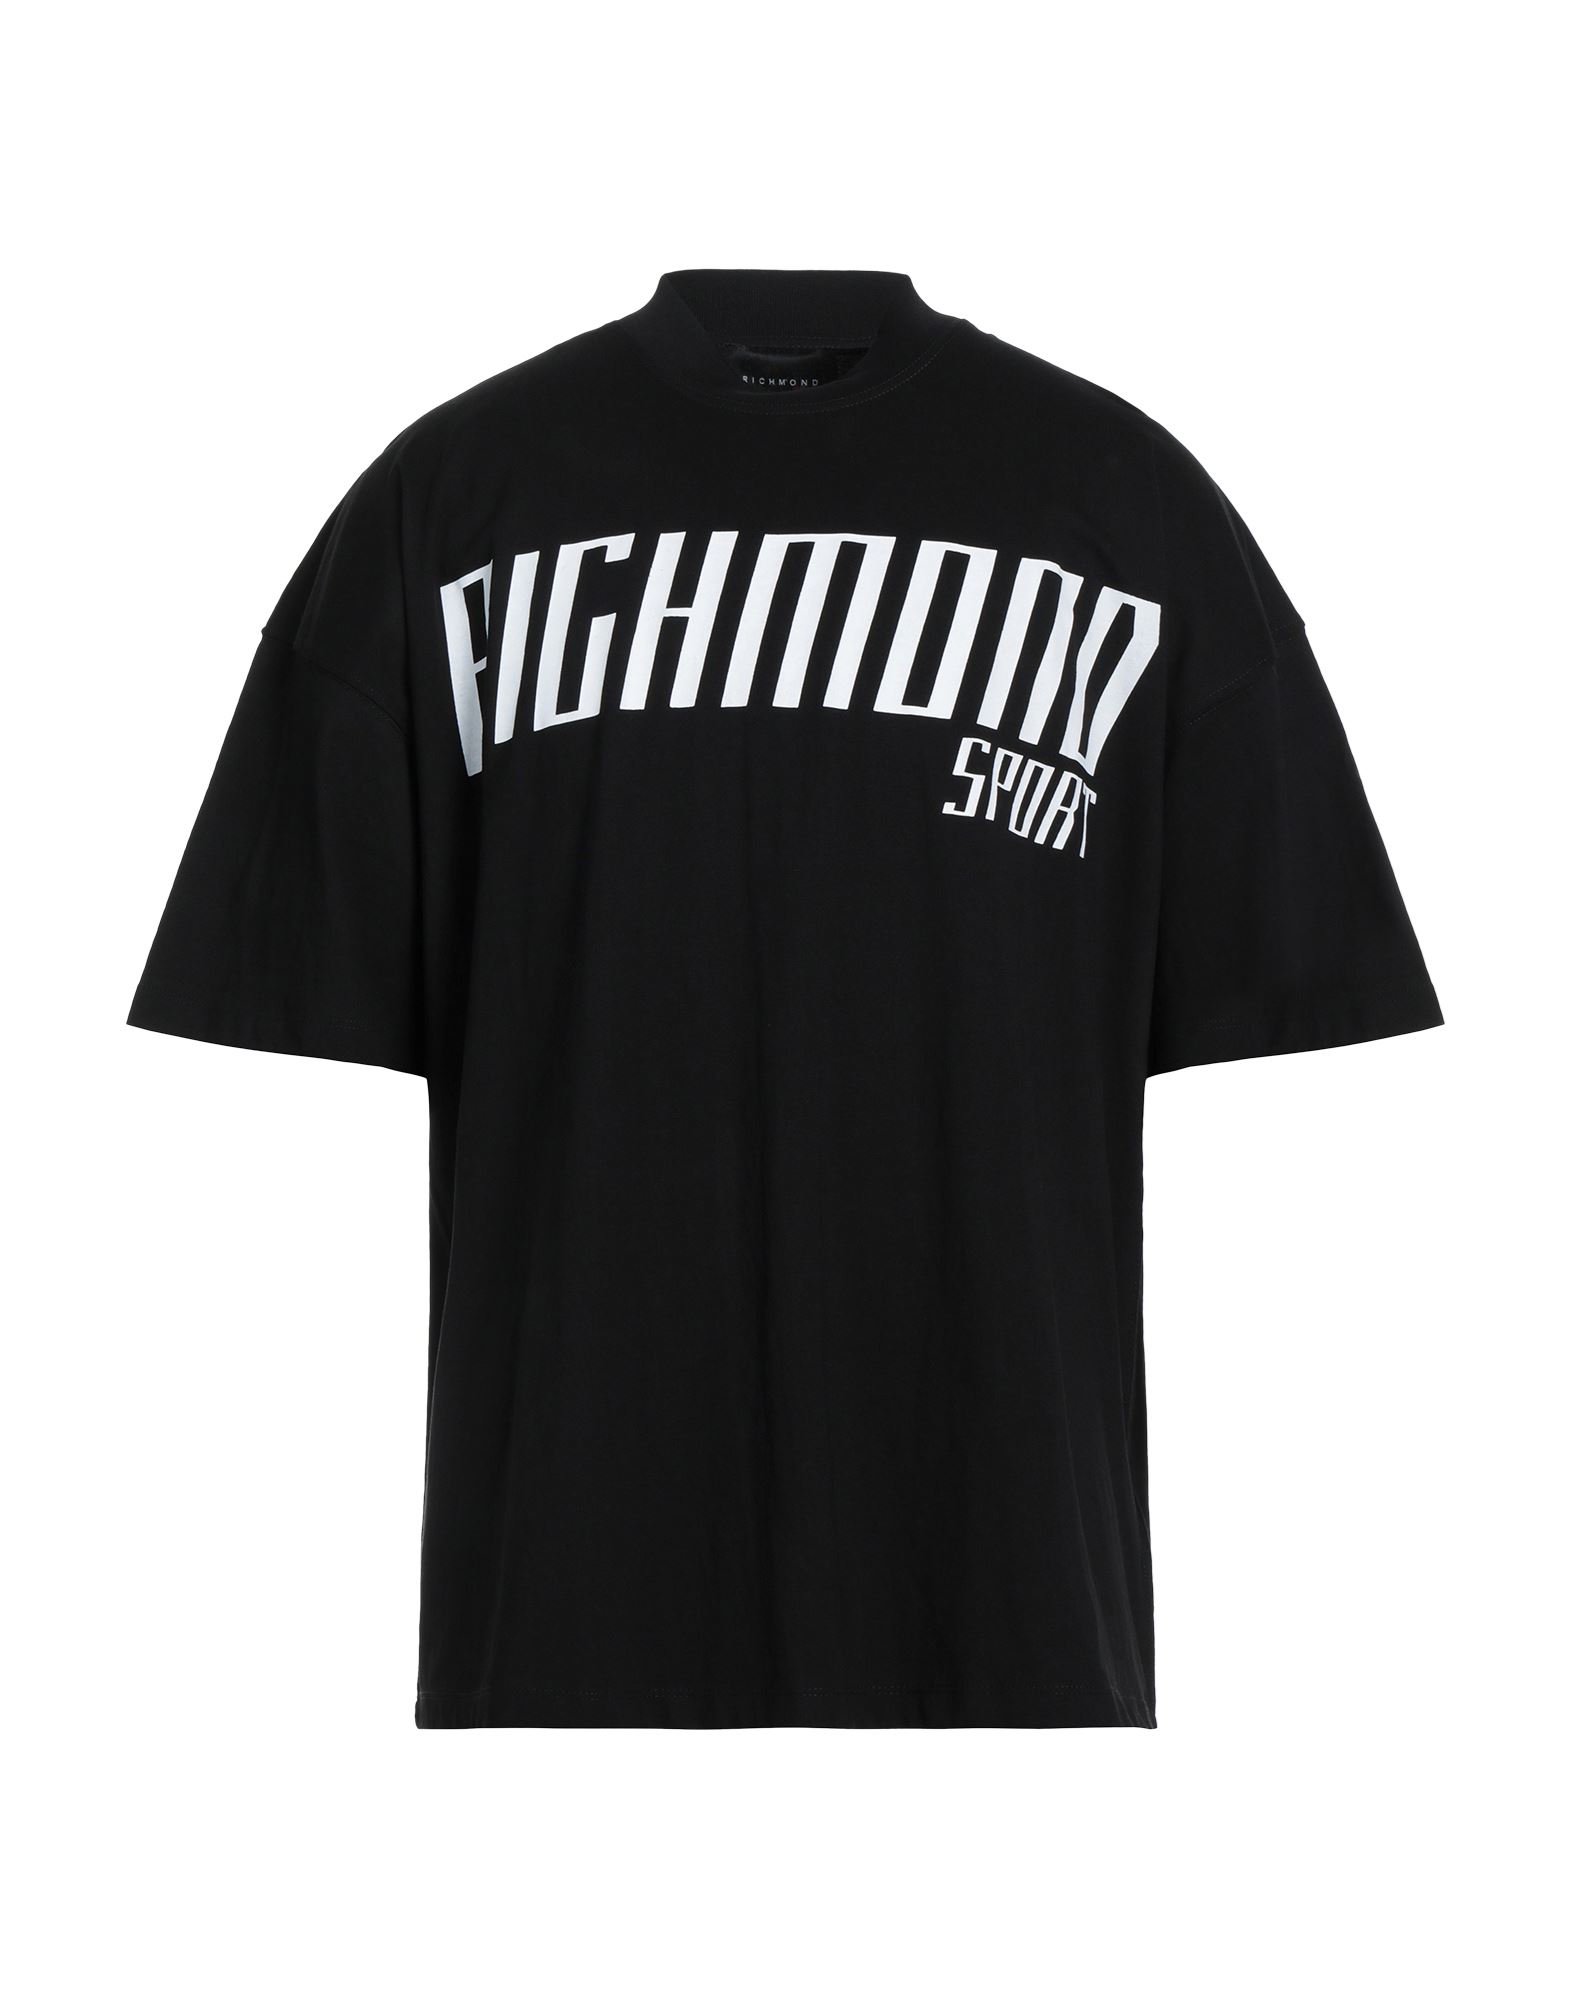 Shop Richmond Man T-shirt Black Size Xxl Cotton